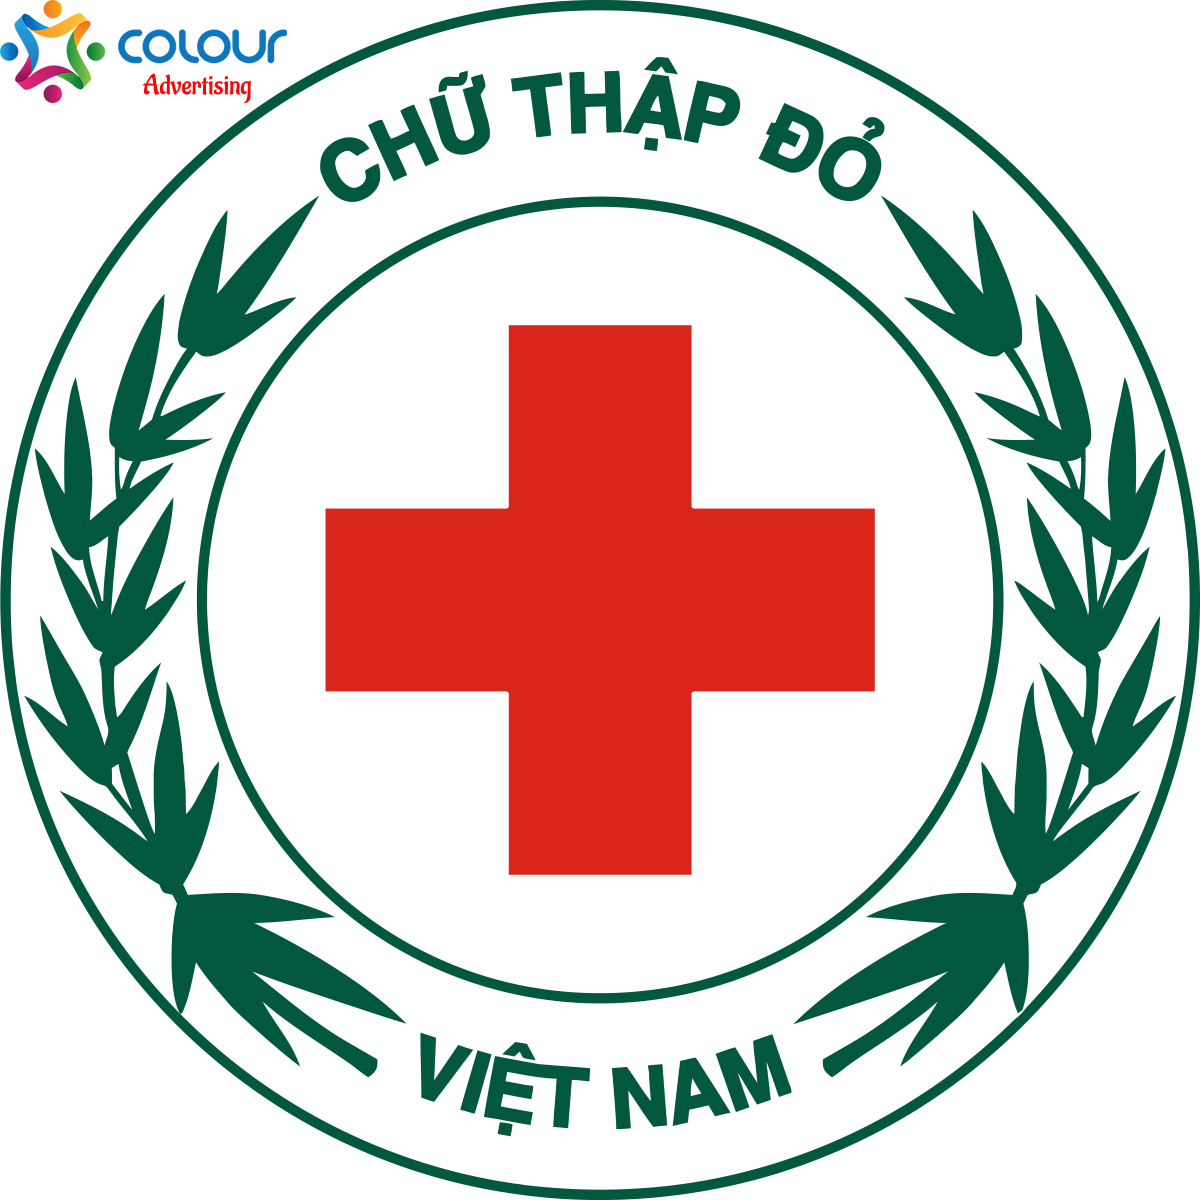 Download logo hội chữ thập đỏ Vector, PNG, PSD miễn phí